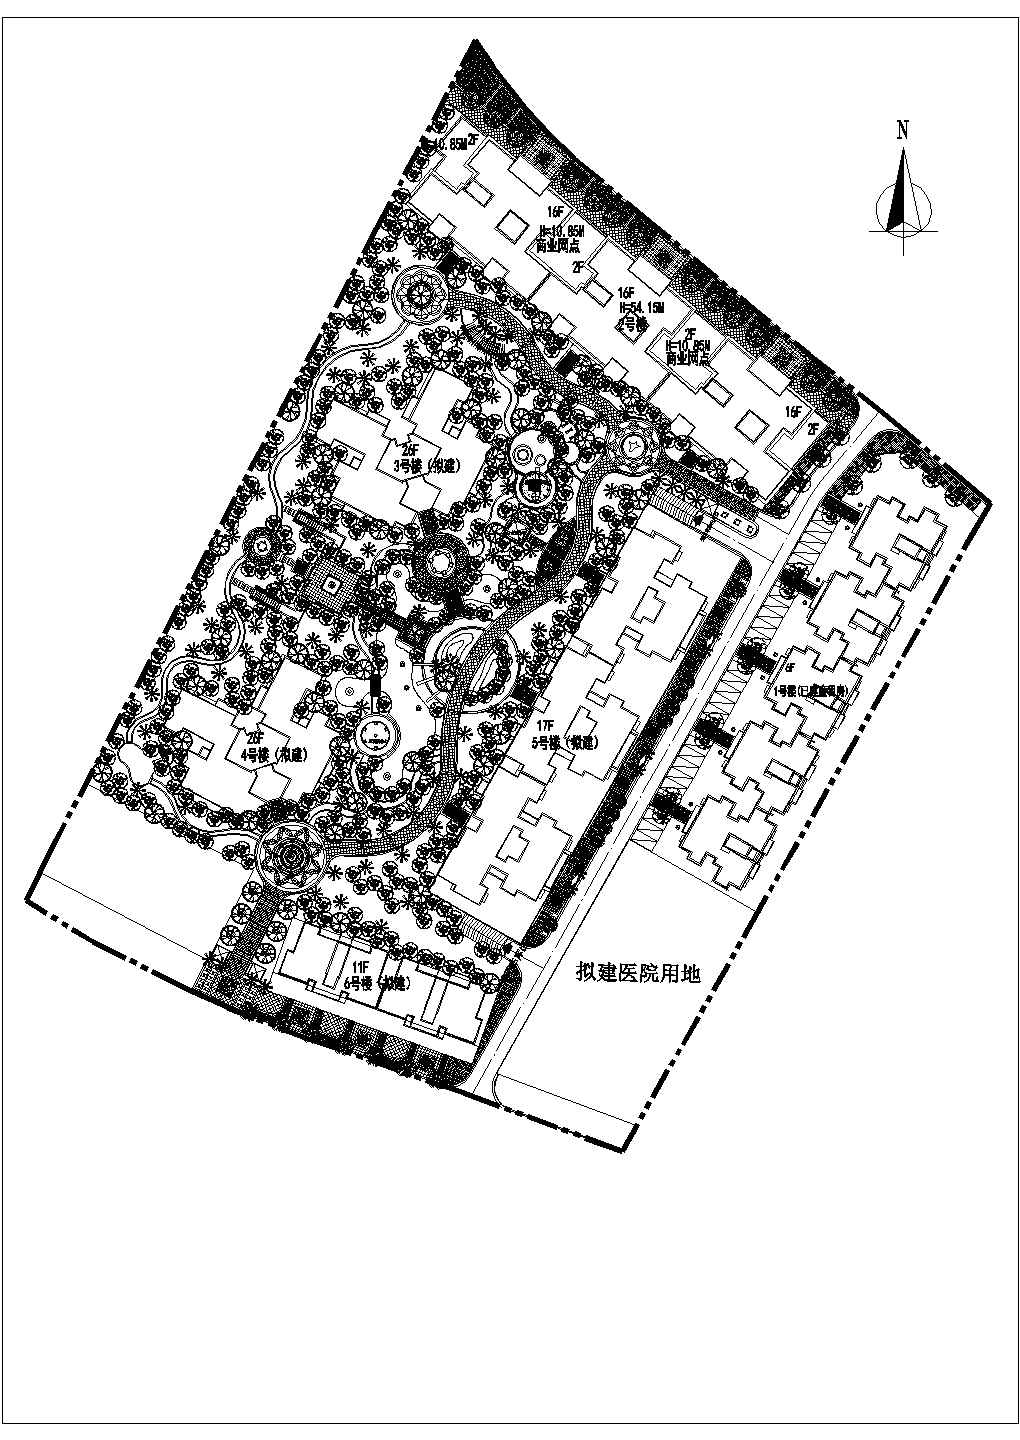 滨河花园小区景观规划设计总平面图